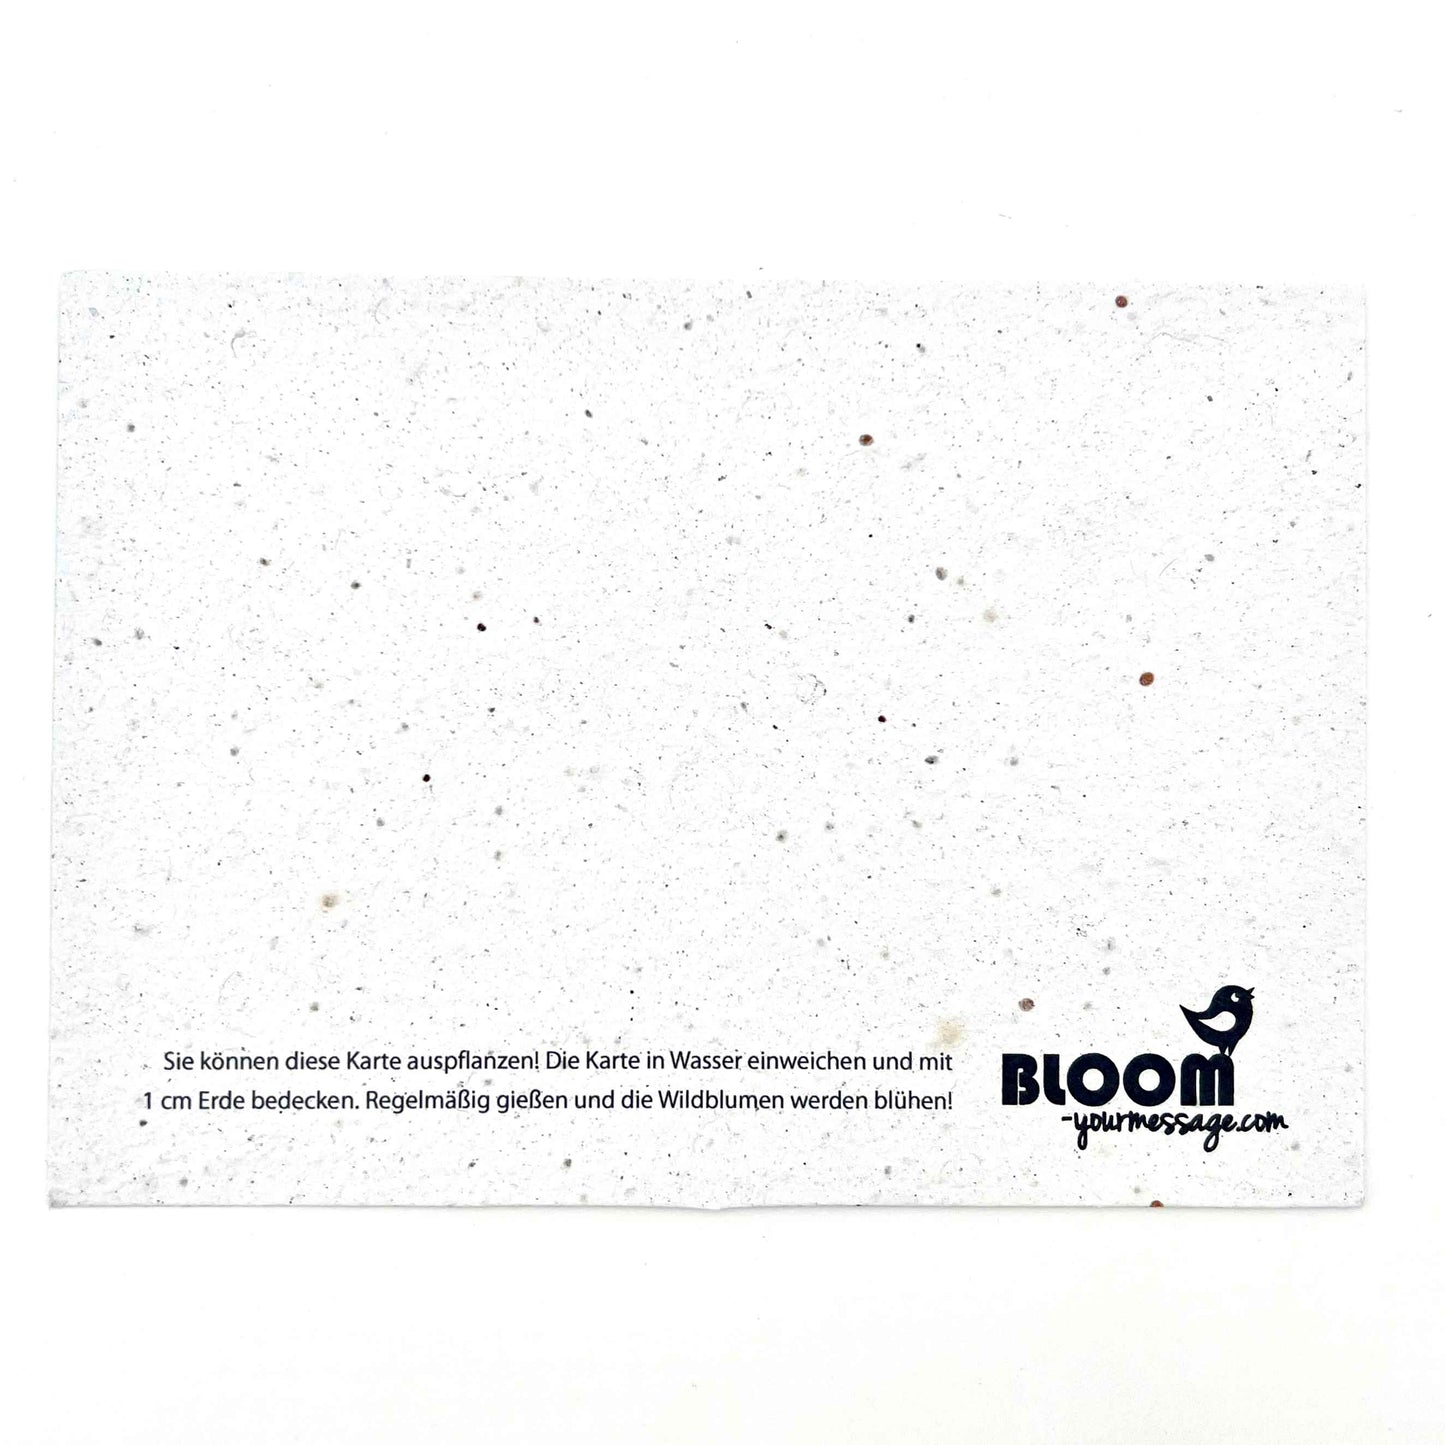 BLOOM YOUR MESSAGE bunte Blumenkarte "Herzlichen Glückwunsch" mit Blumensaatgut | 100% recyceltes Material